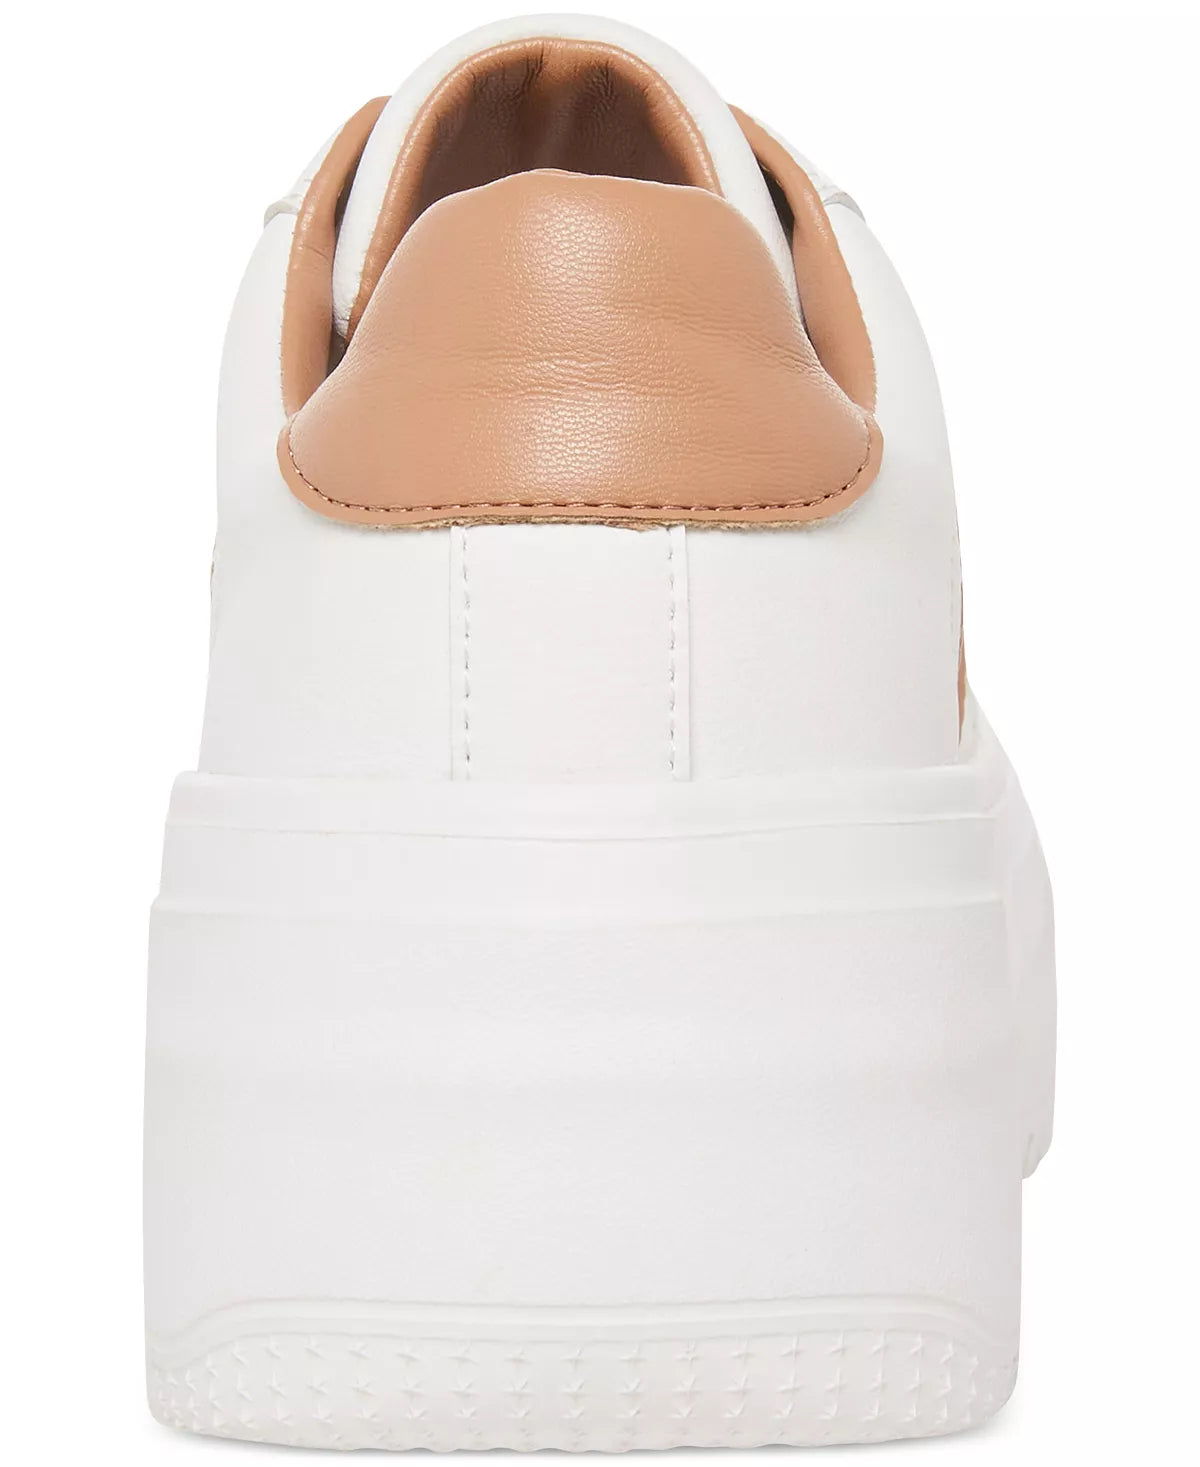 perrin white+ tan sneakers